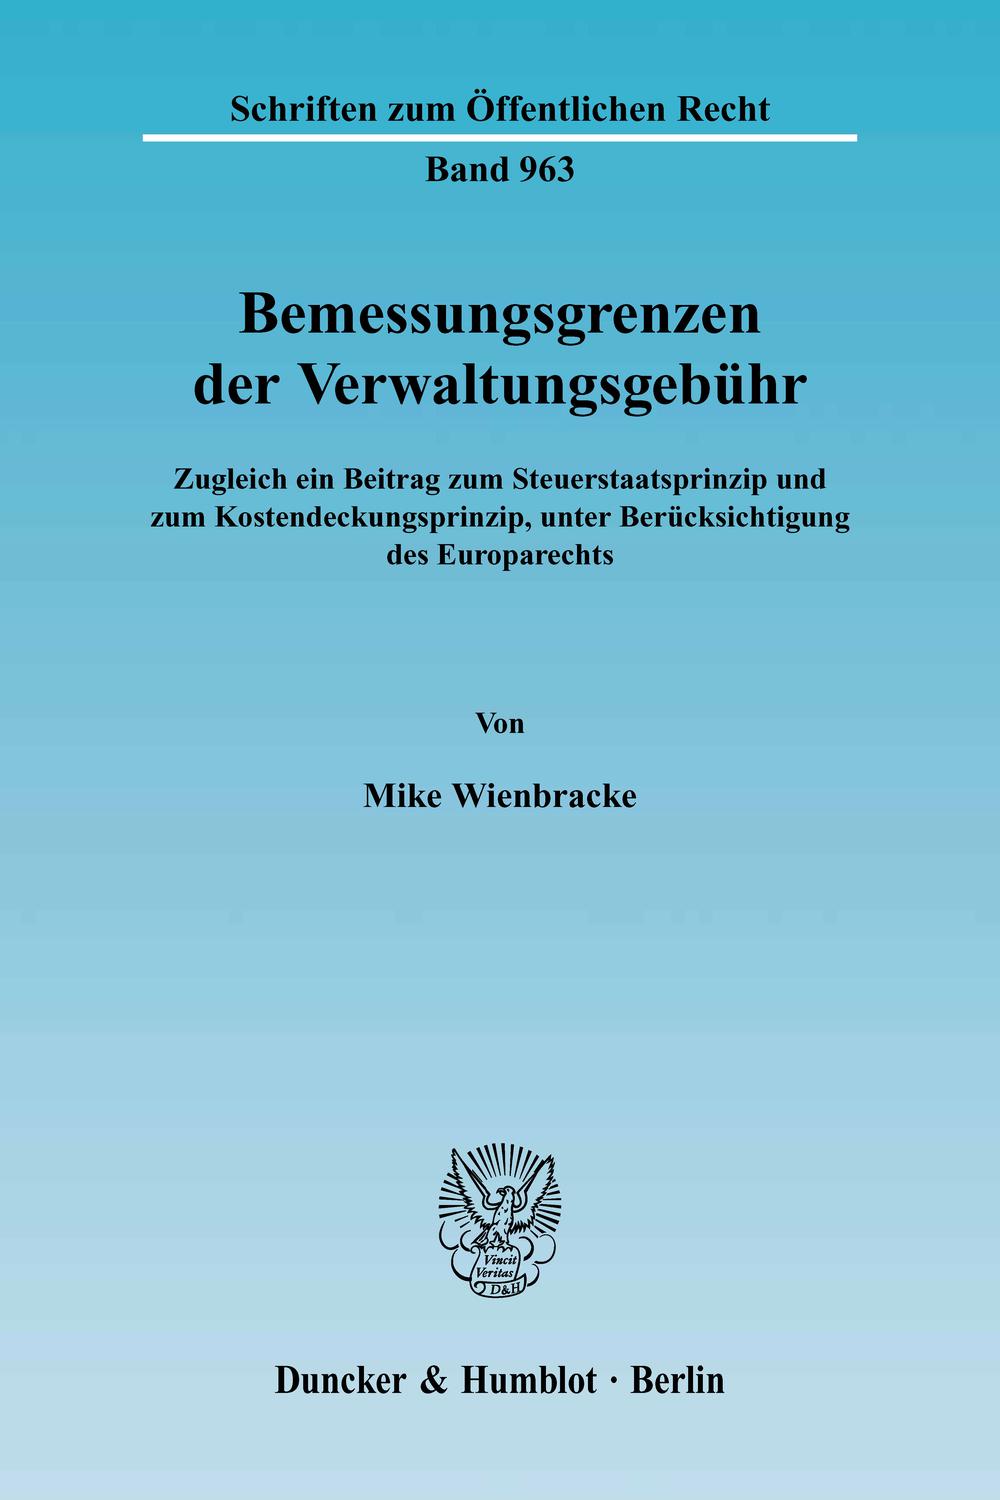 Bemessungsgrenzen der Verwaltungsgebühr. - Mike Wienbracke